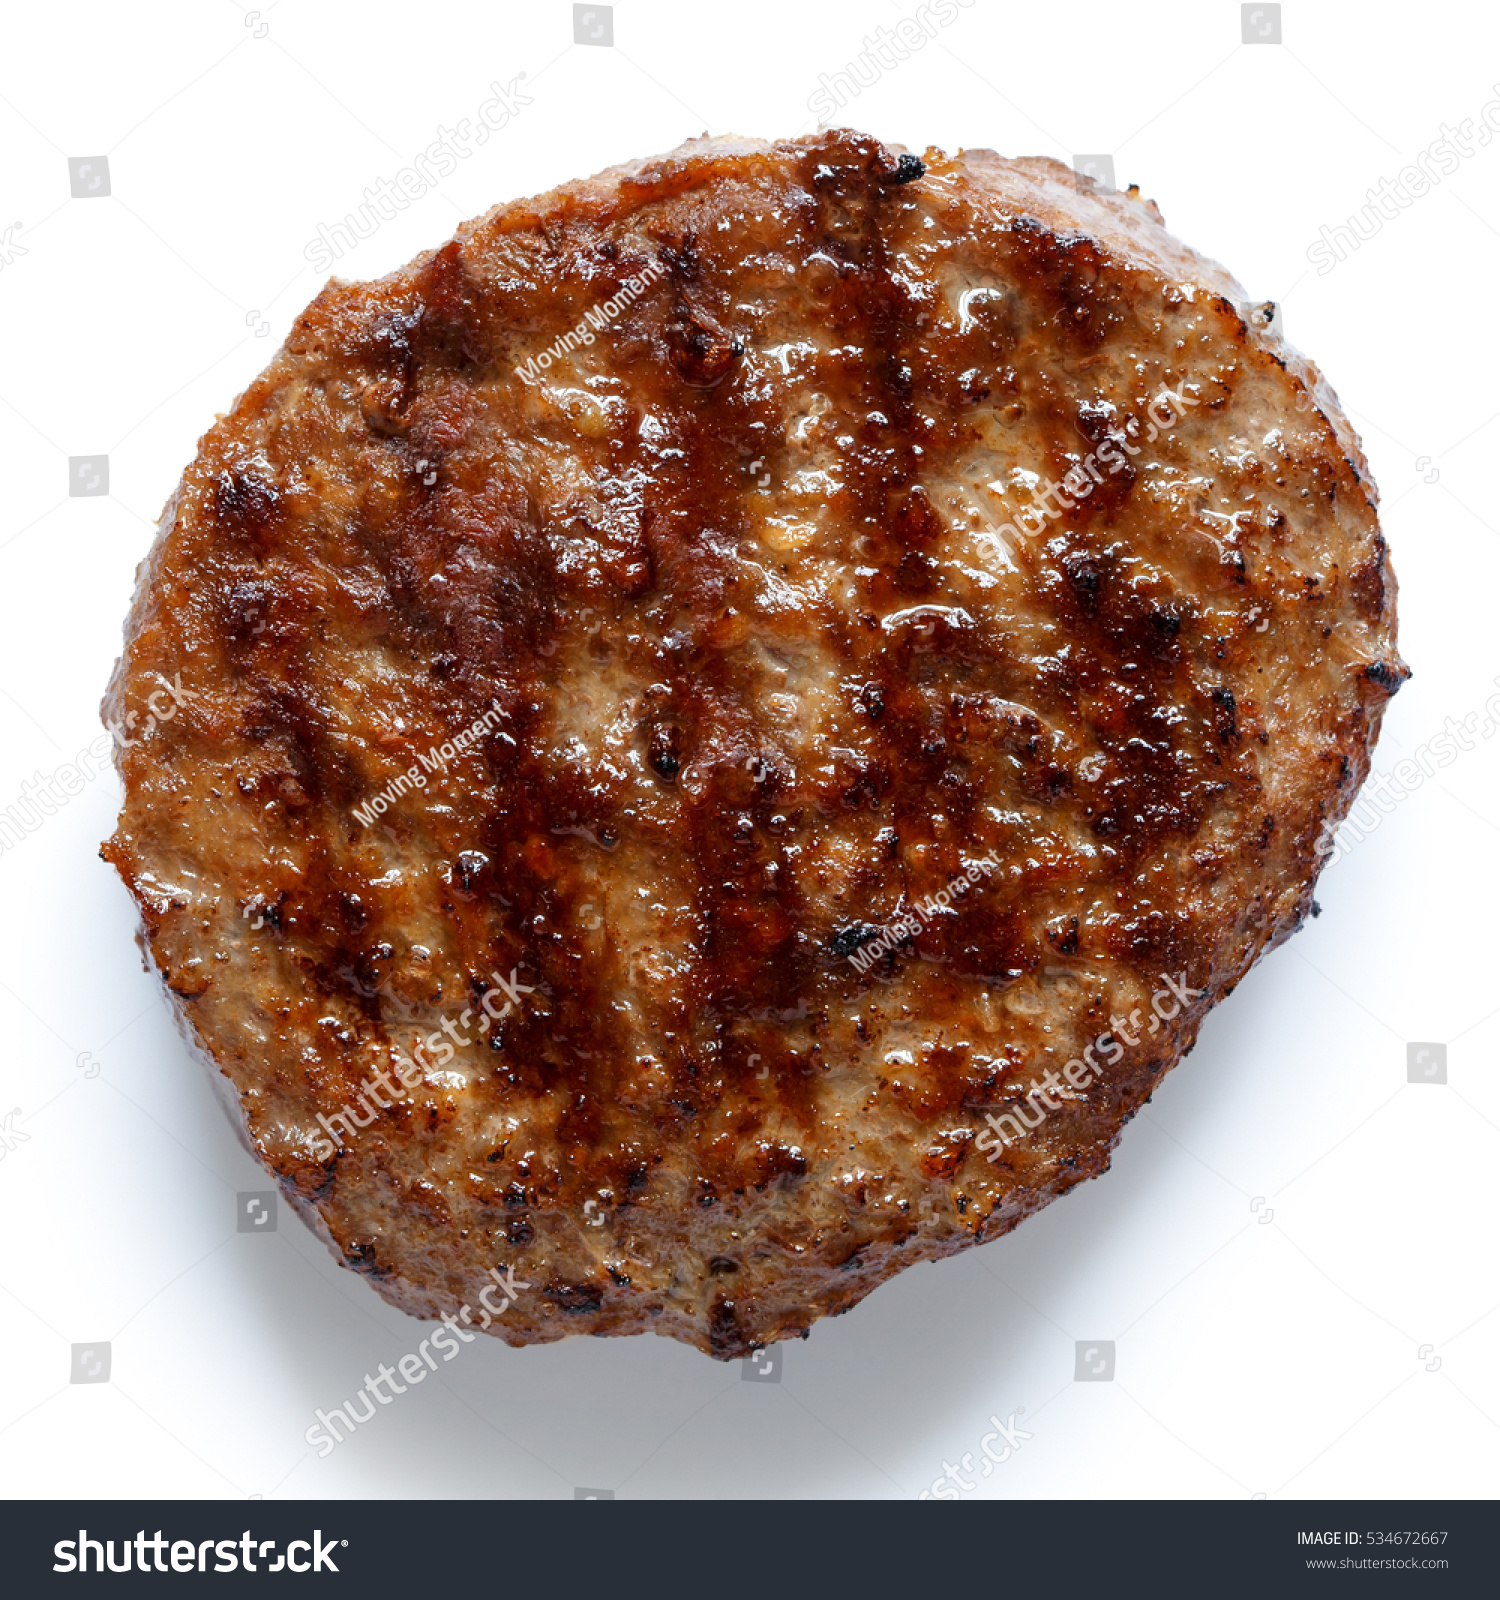 Hamburger single patty